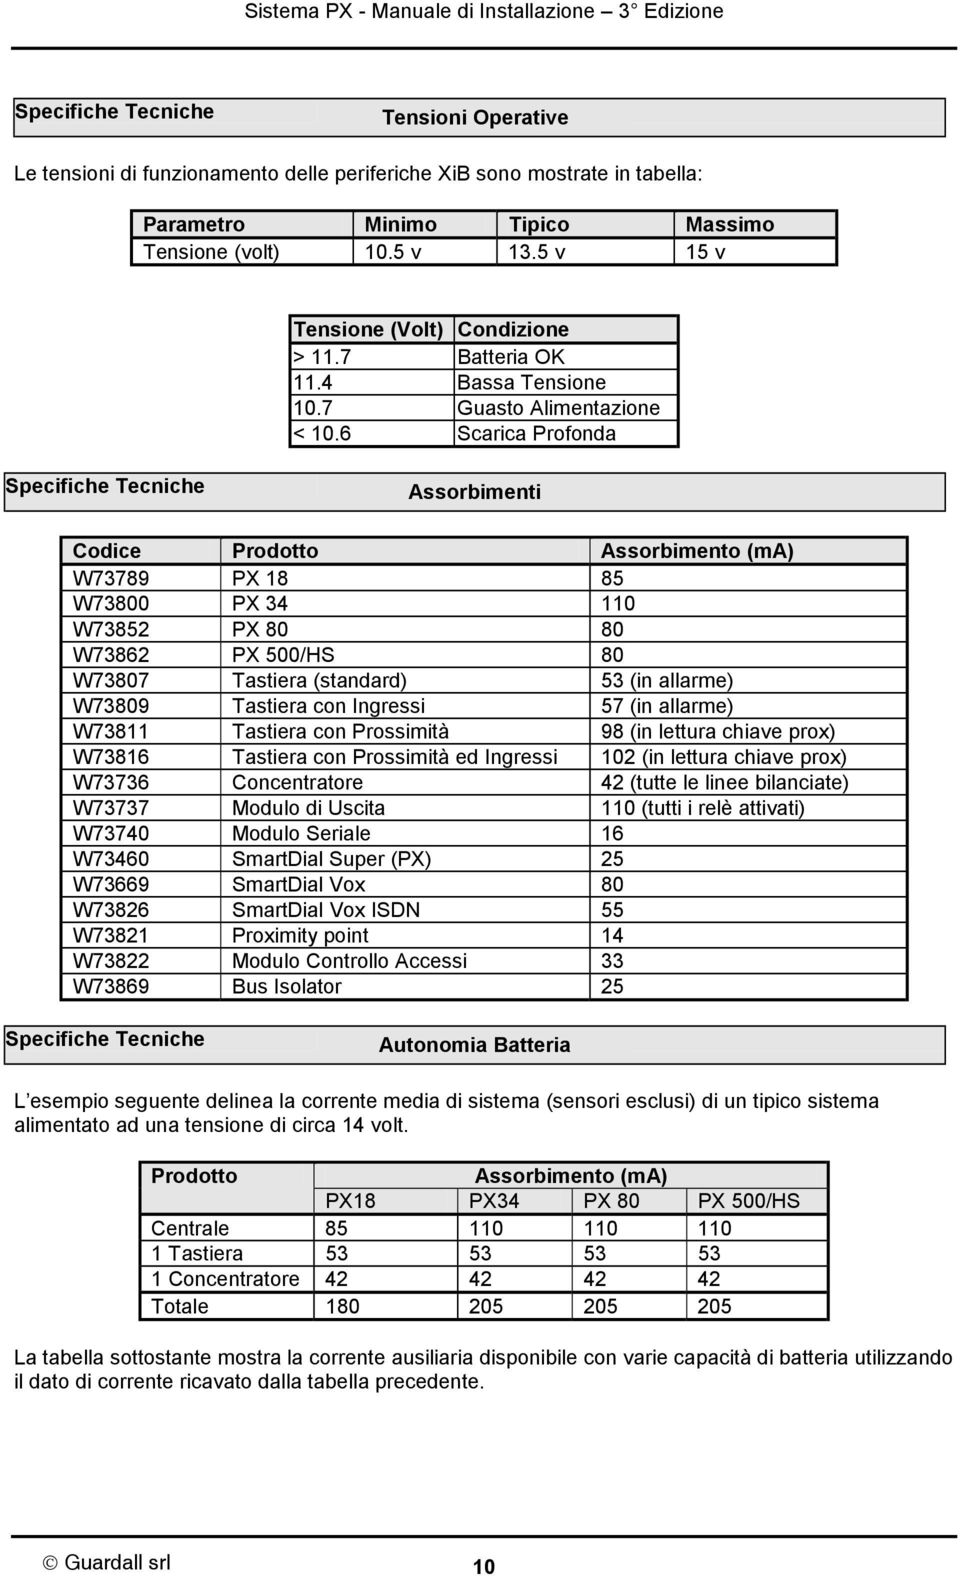 6 Scarica Profonda Specifiche Tecniche Assorbimenti Codice Prodotto Assorbimento (ma) W73789 PX 18 85 W73800 PX 34 110 W73852 PX 80 80 W73862 PX 500/HS 80 W73807 Tastiera (standard) 53 (in allarme)